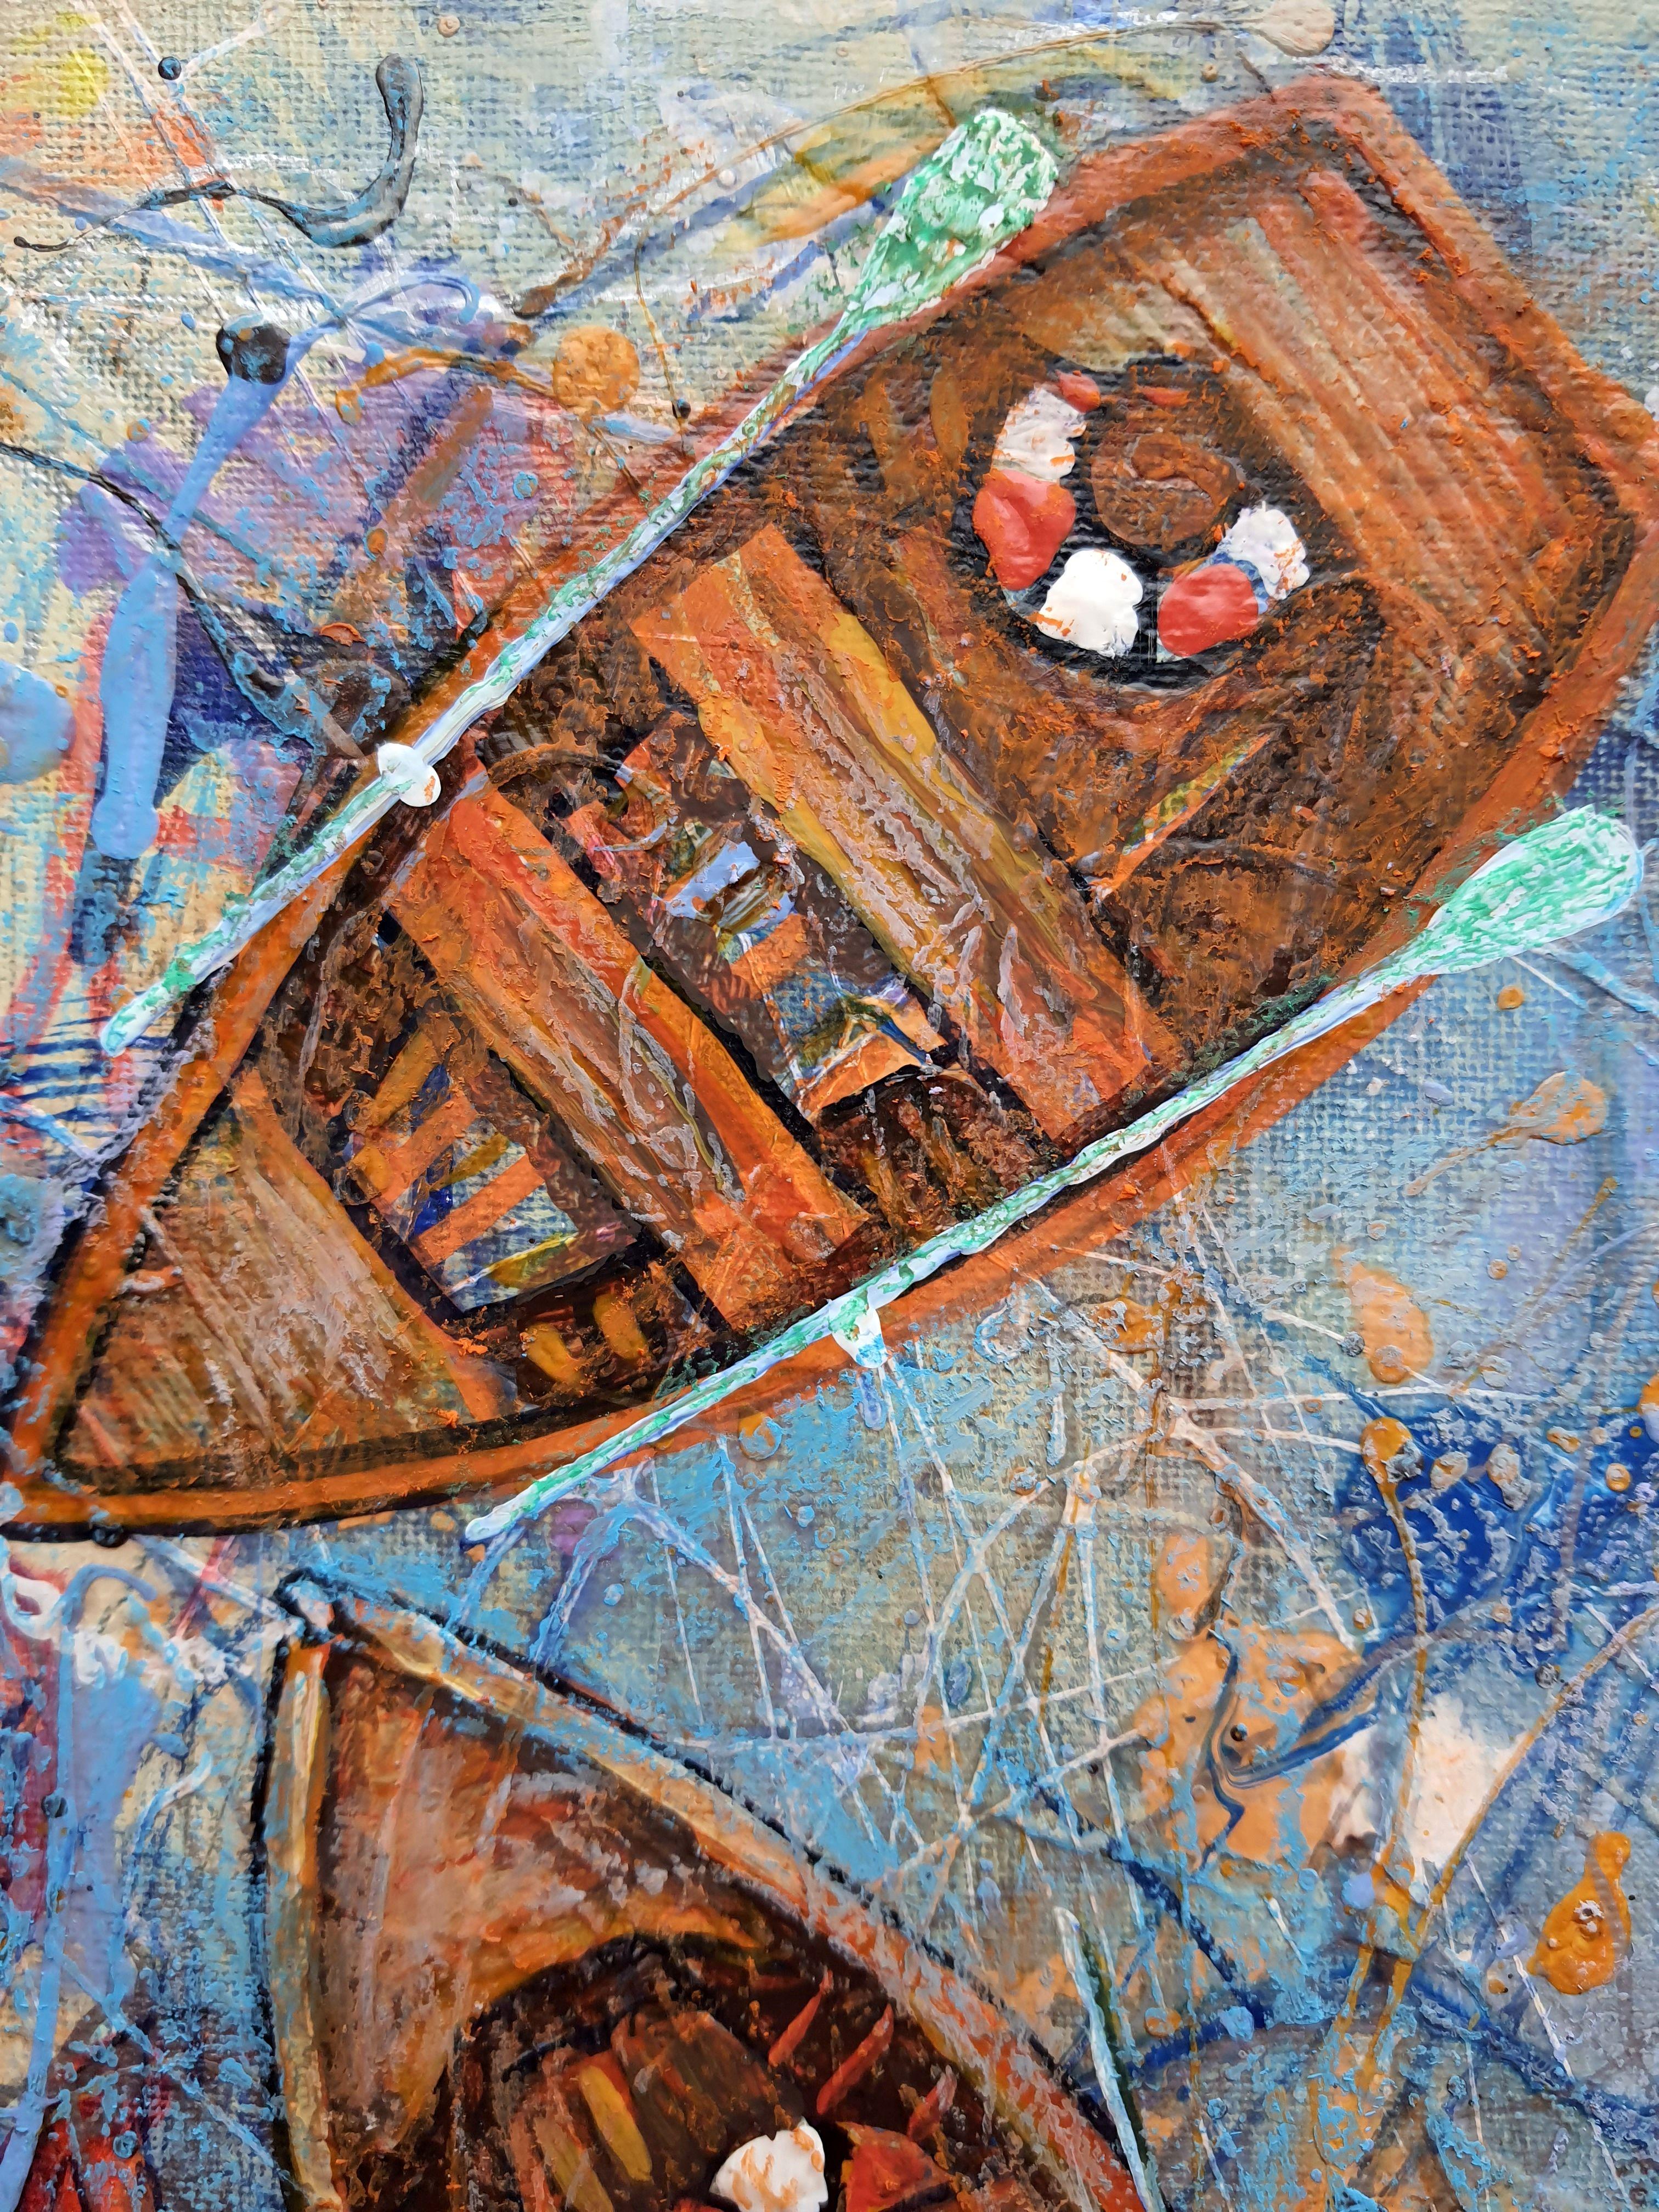 Orange Boats - Painting by RAKHMET REDZHEPOV (RAMZI)